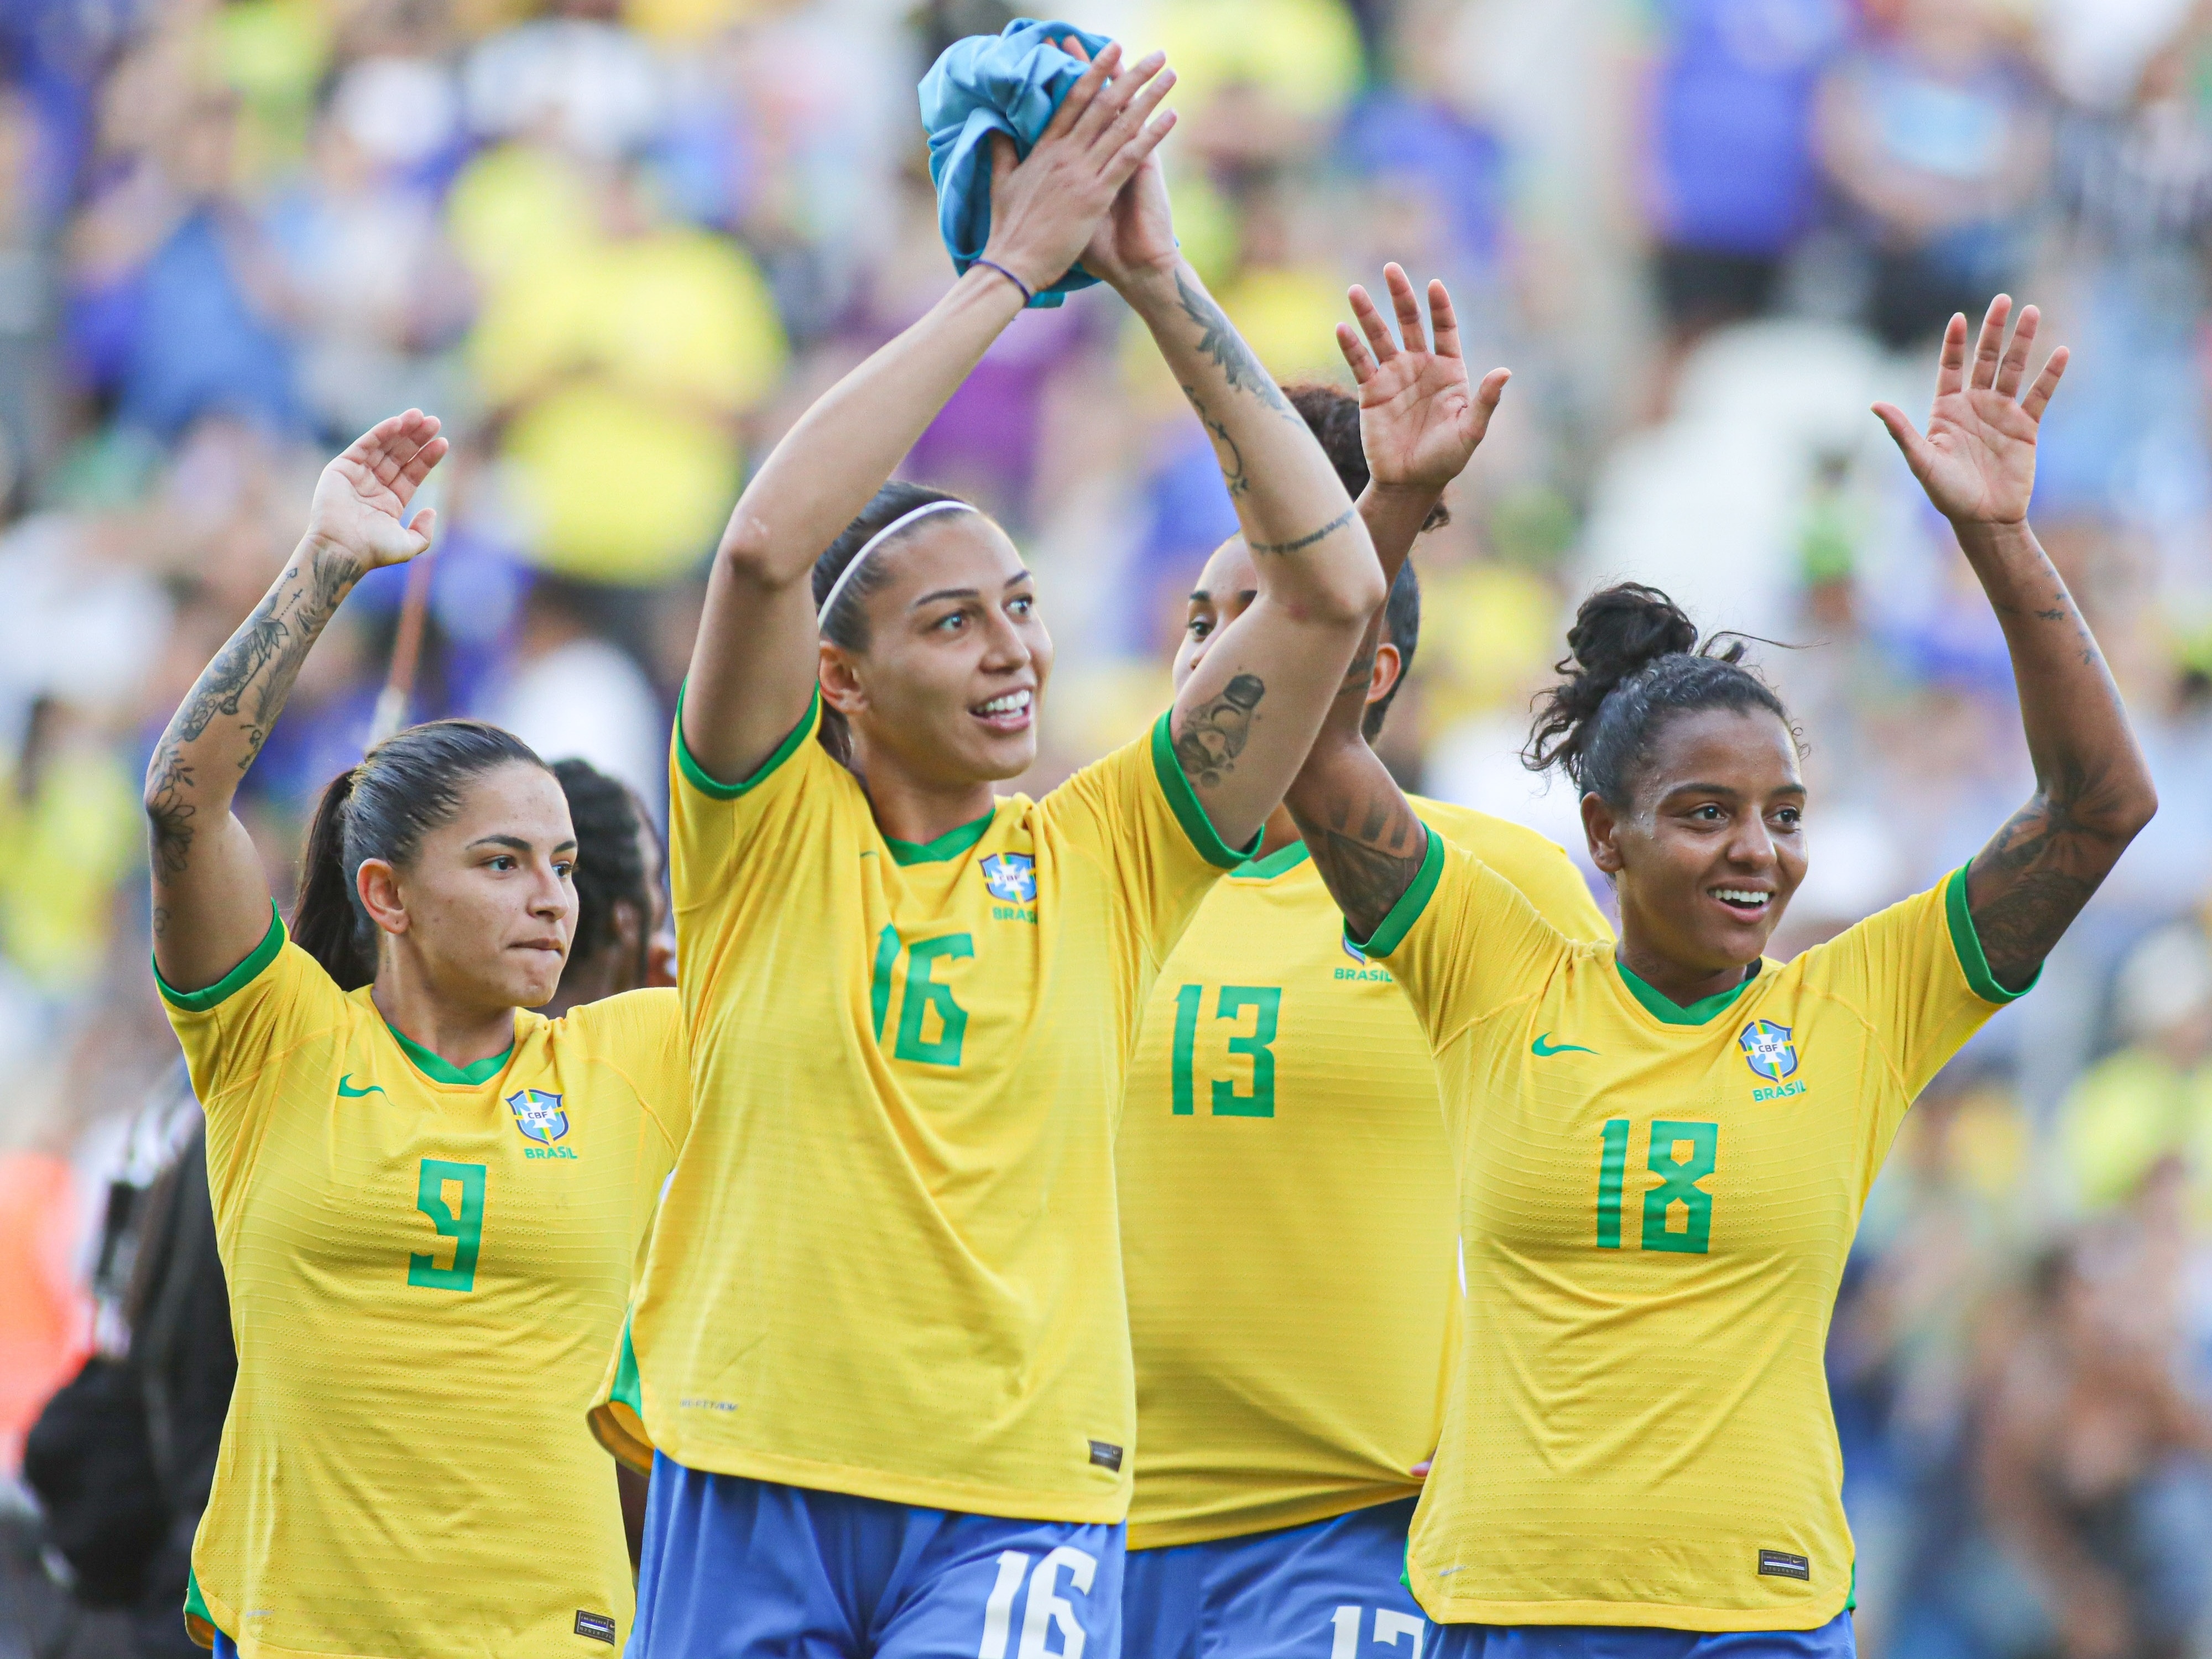 🚨🚨 ALERTA DE LANÇAMENTO A Seleção Brasileira Feminina de futebol irá  jogar a Copa do Mundo da FIFA em 2023 com o novo uniform